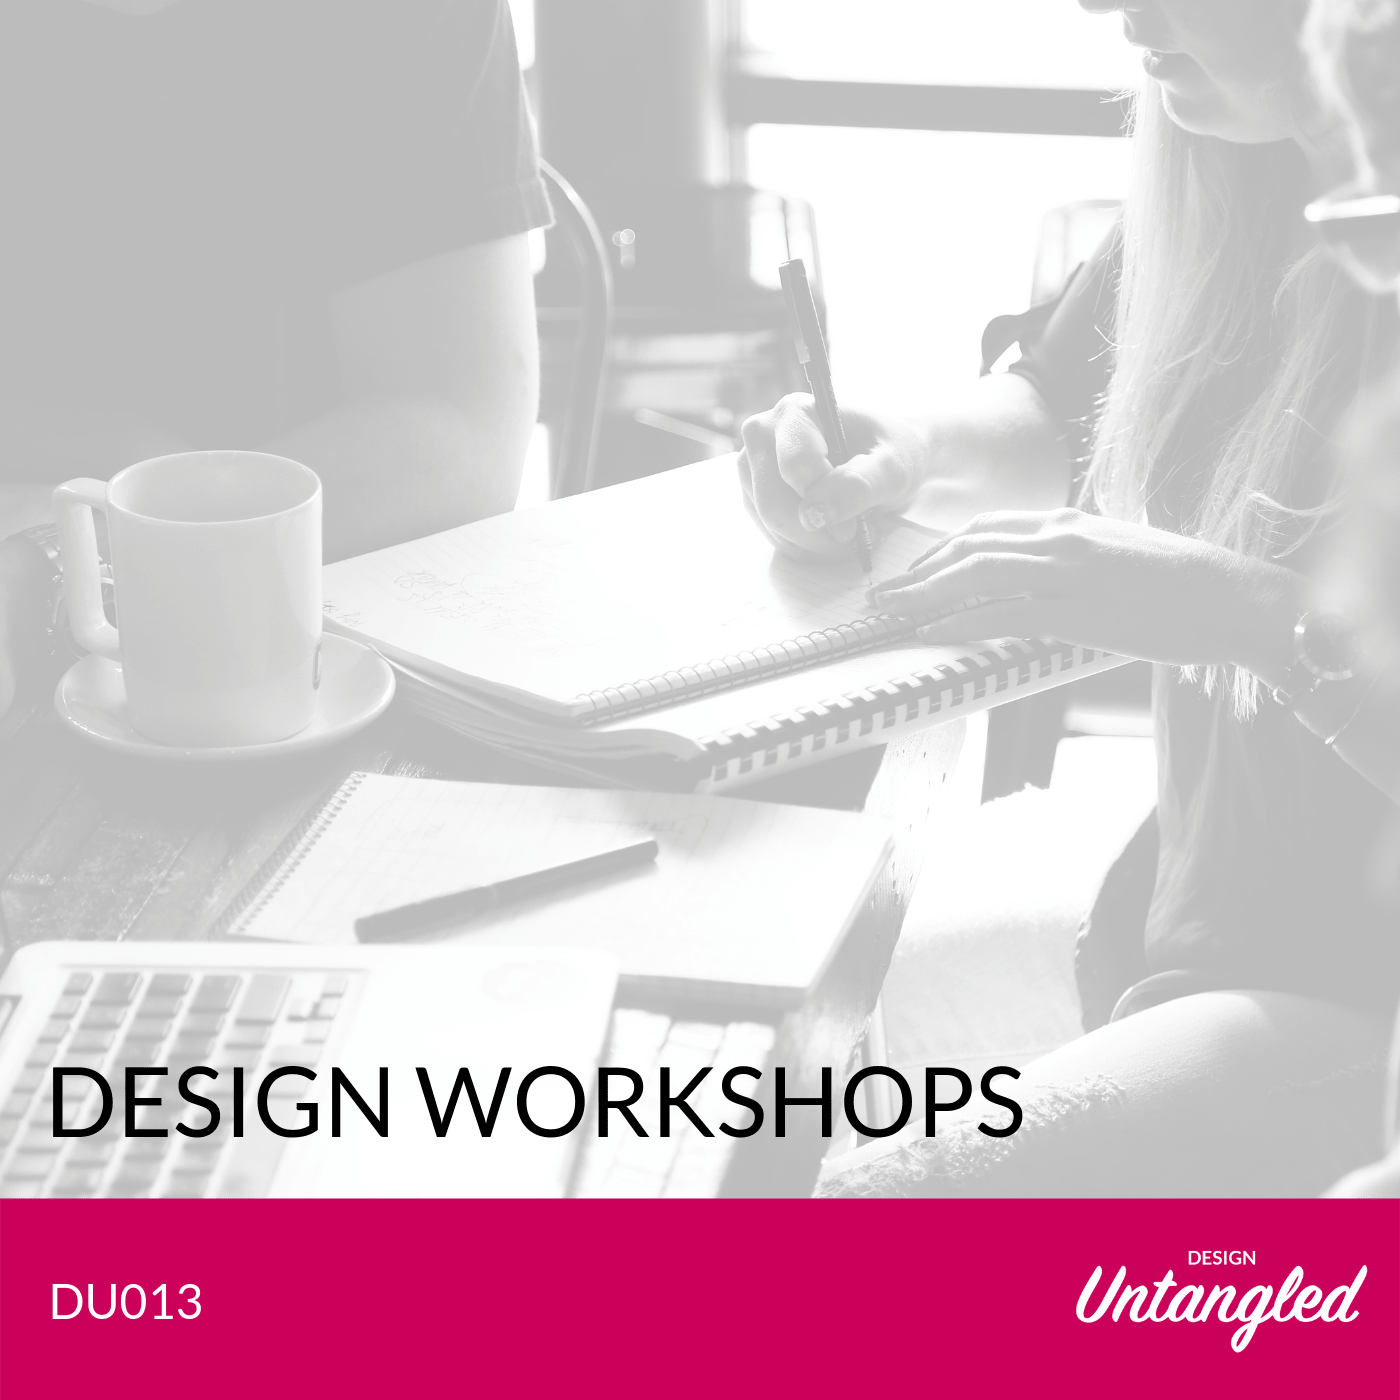 DU013 – Design Workshops